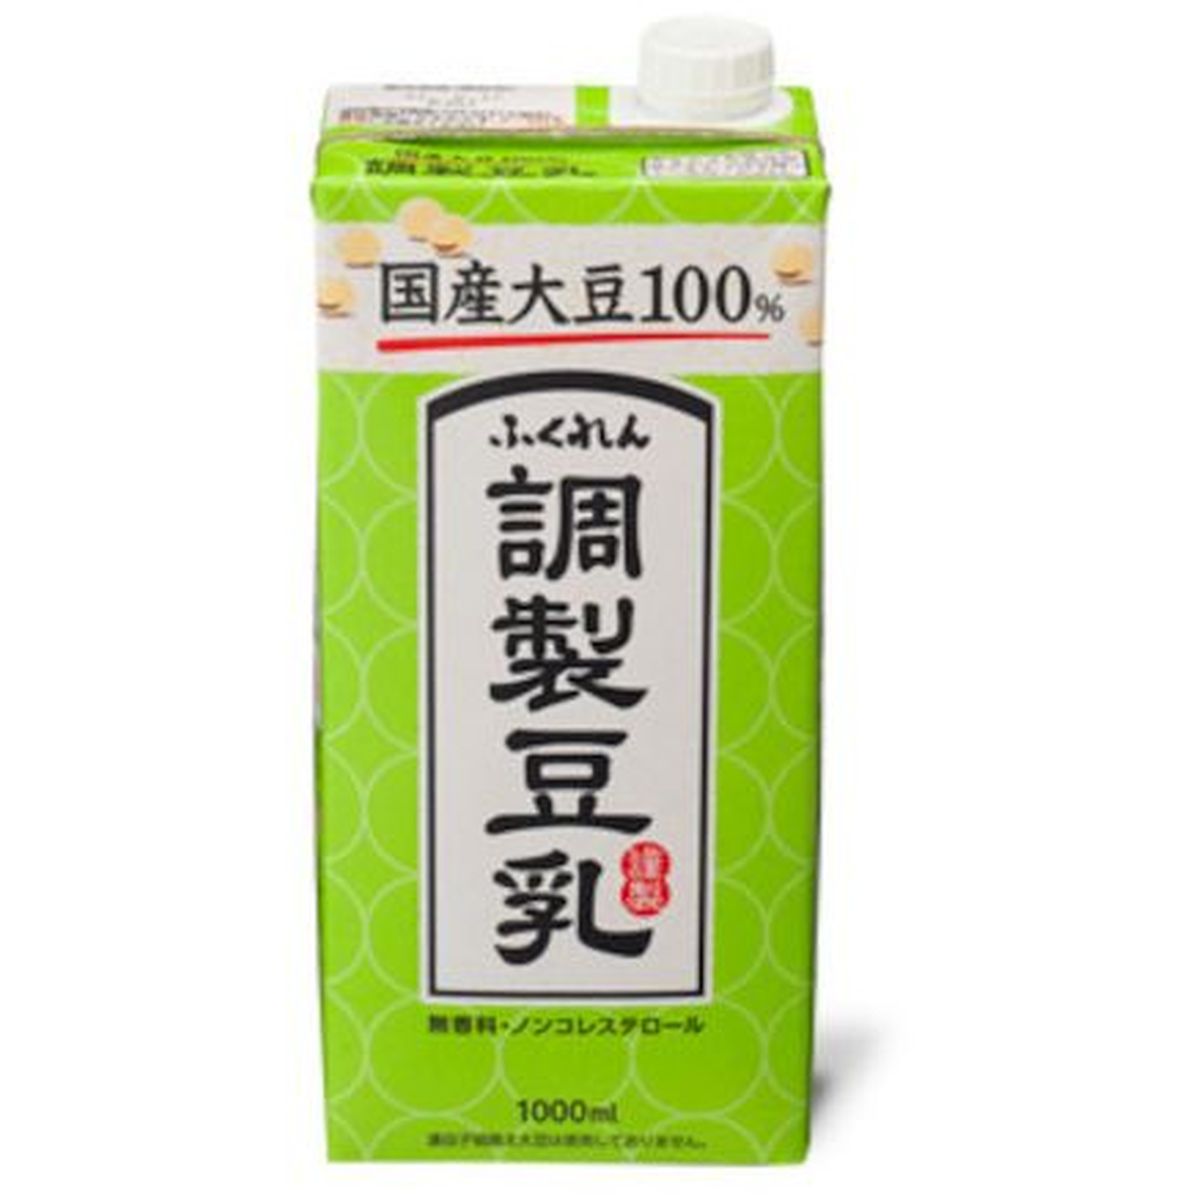 【6個入リ】フクレン 国産大豆調製豆乳 1L